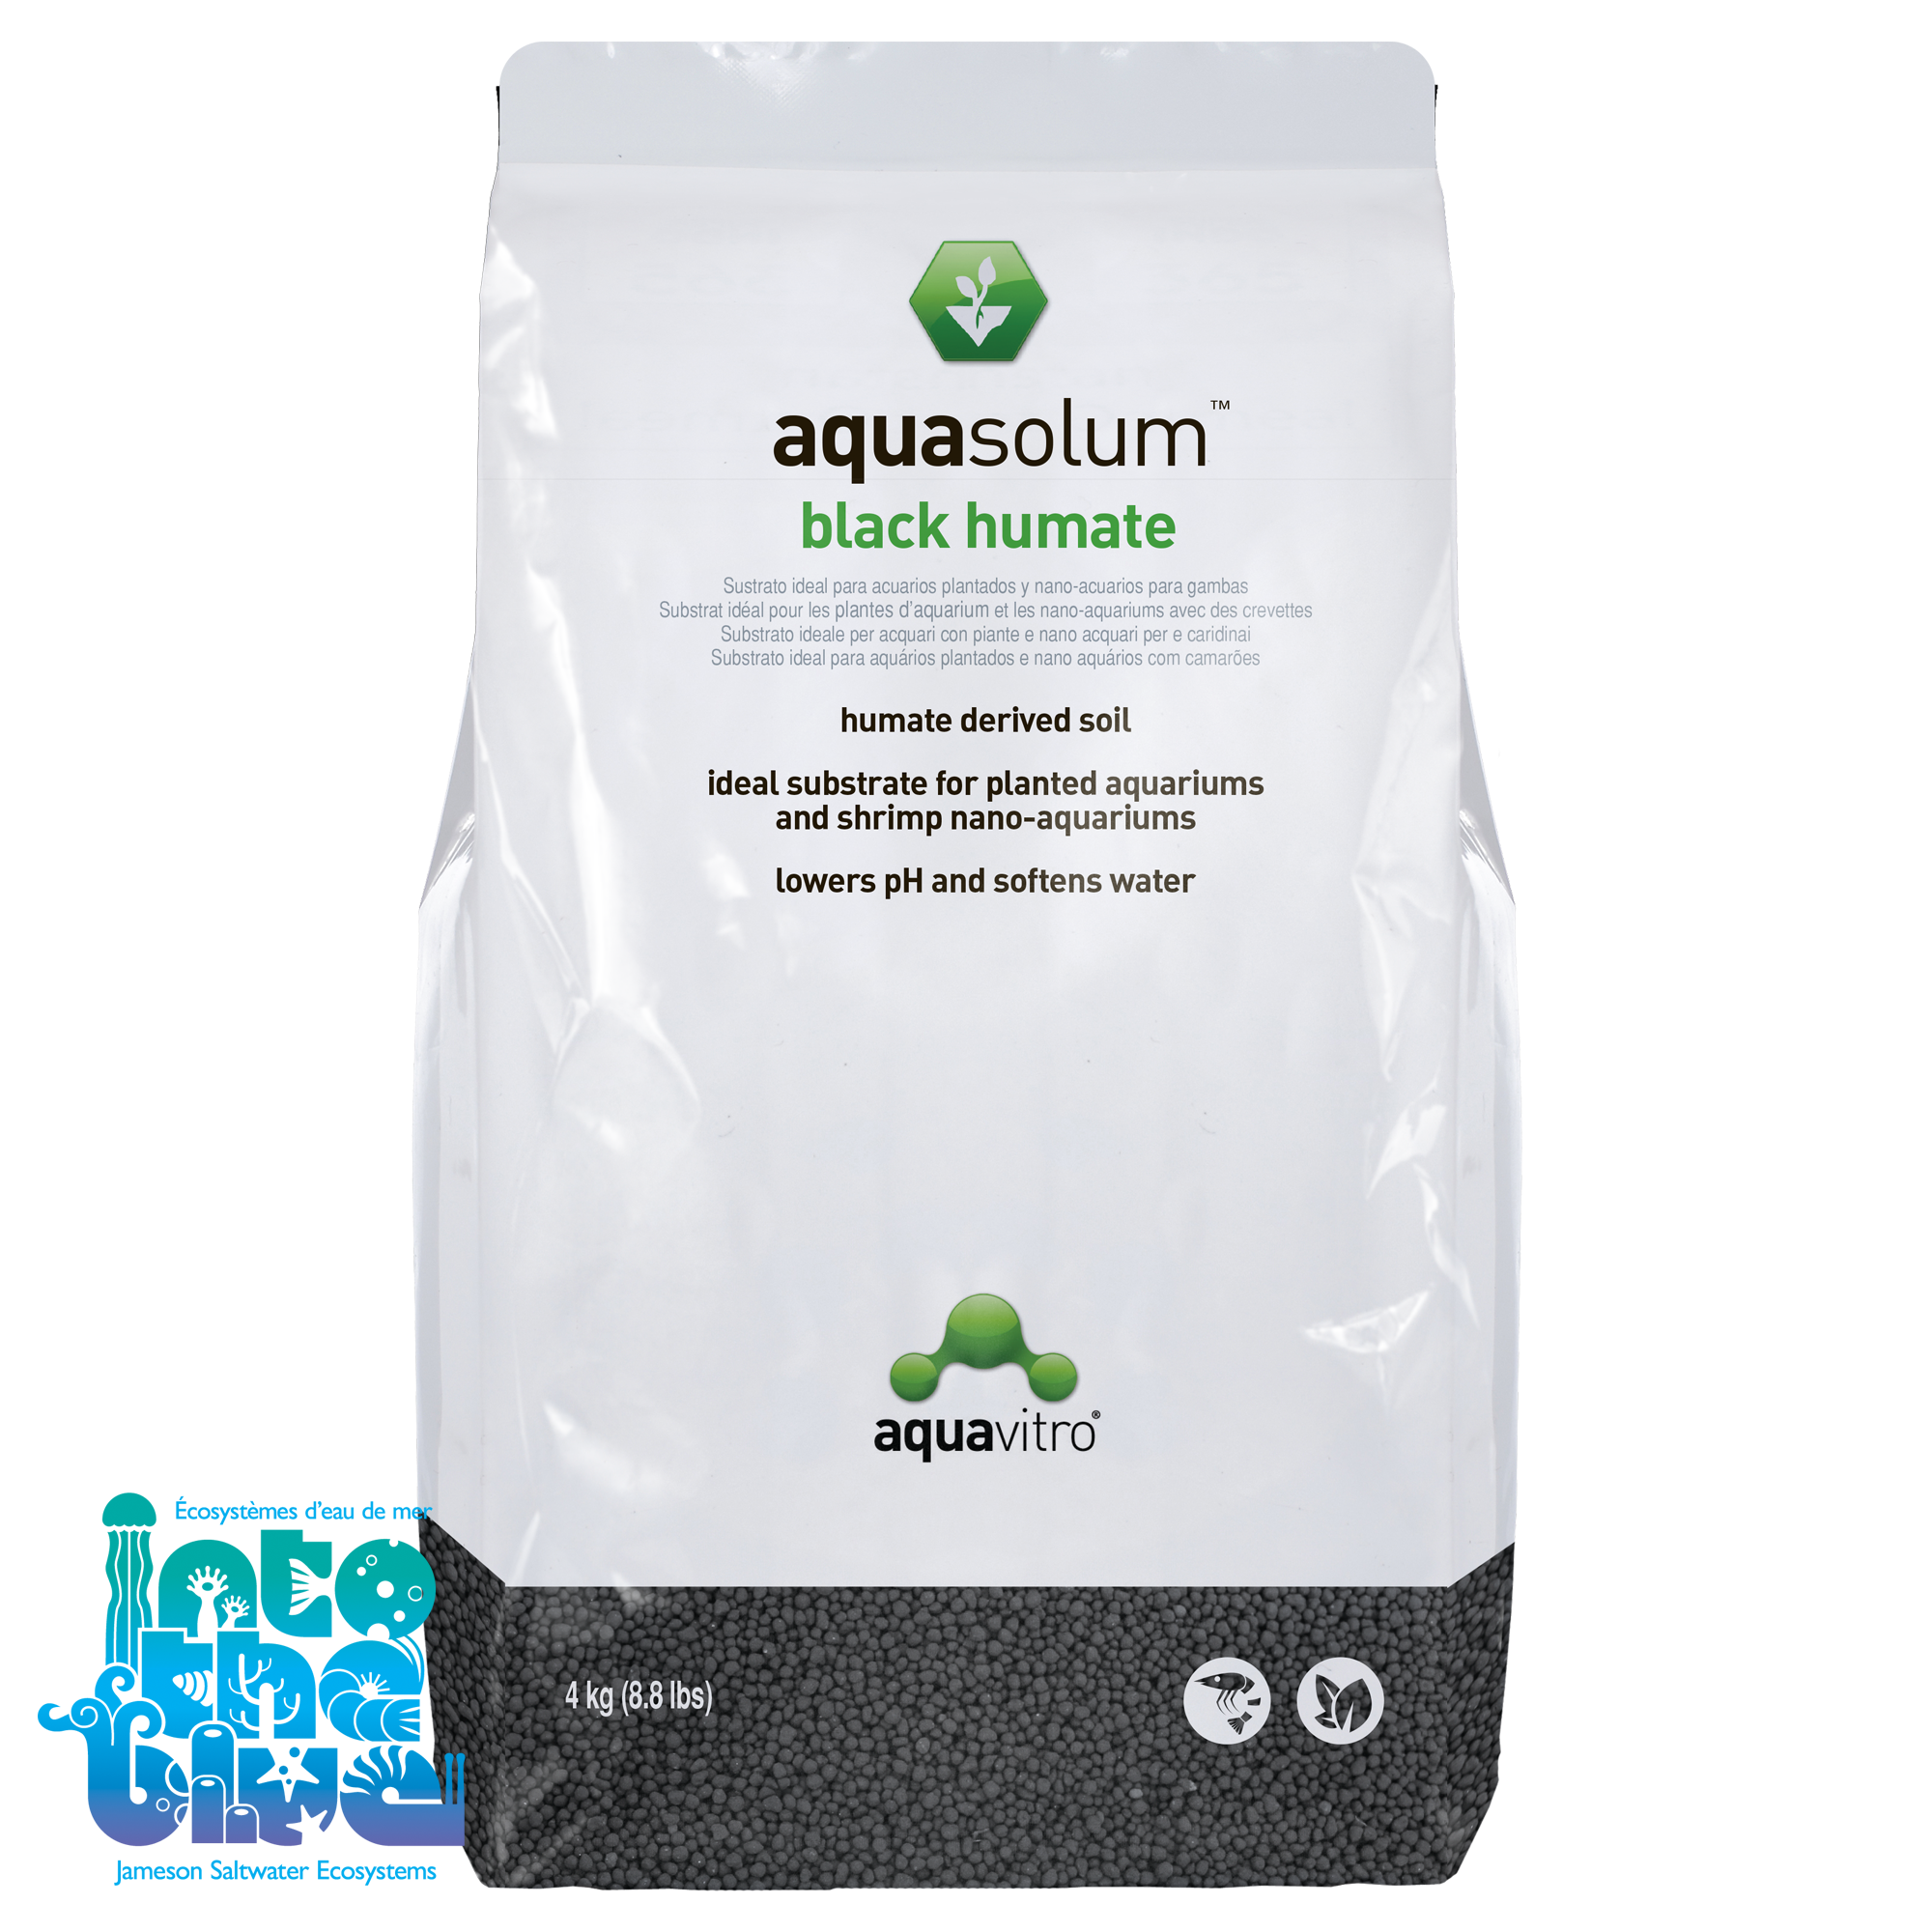 Aquavitro - Aquasolum | Black Humate